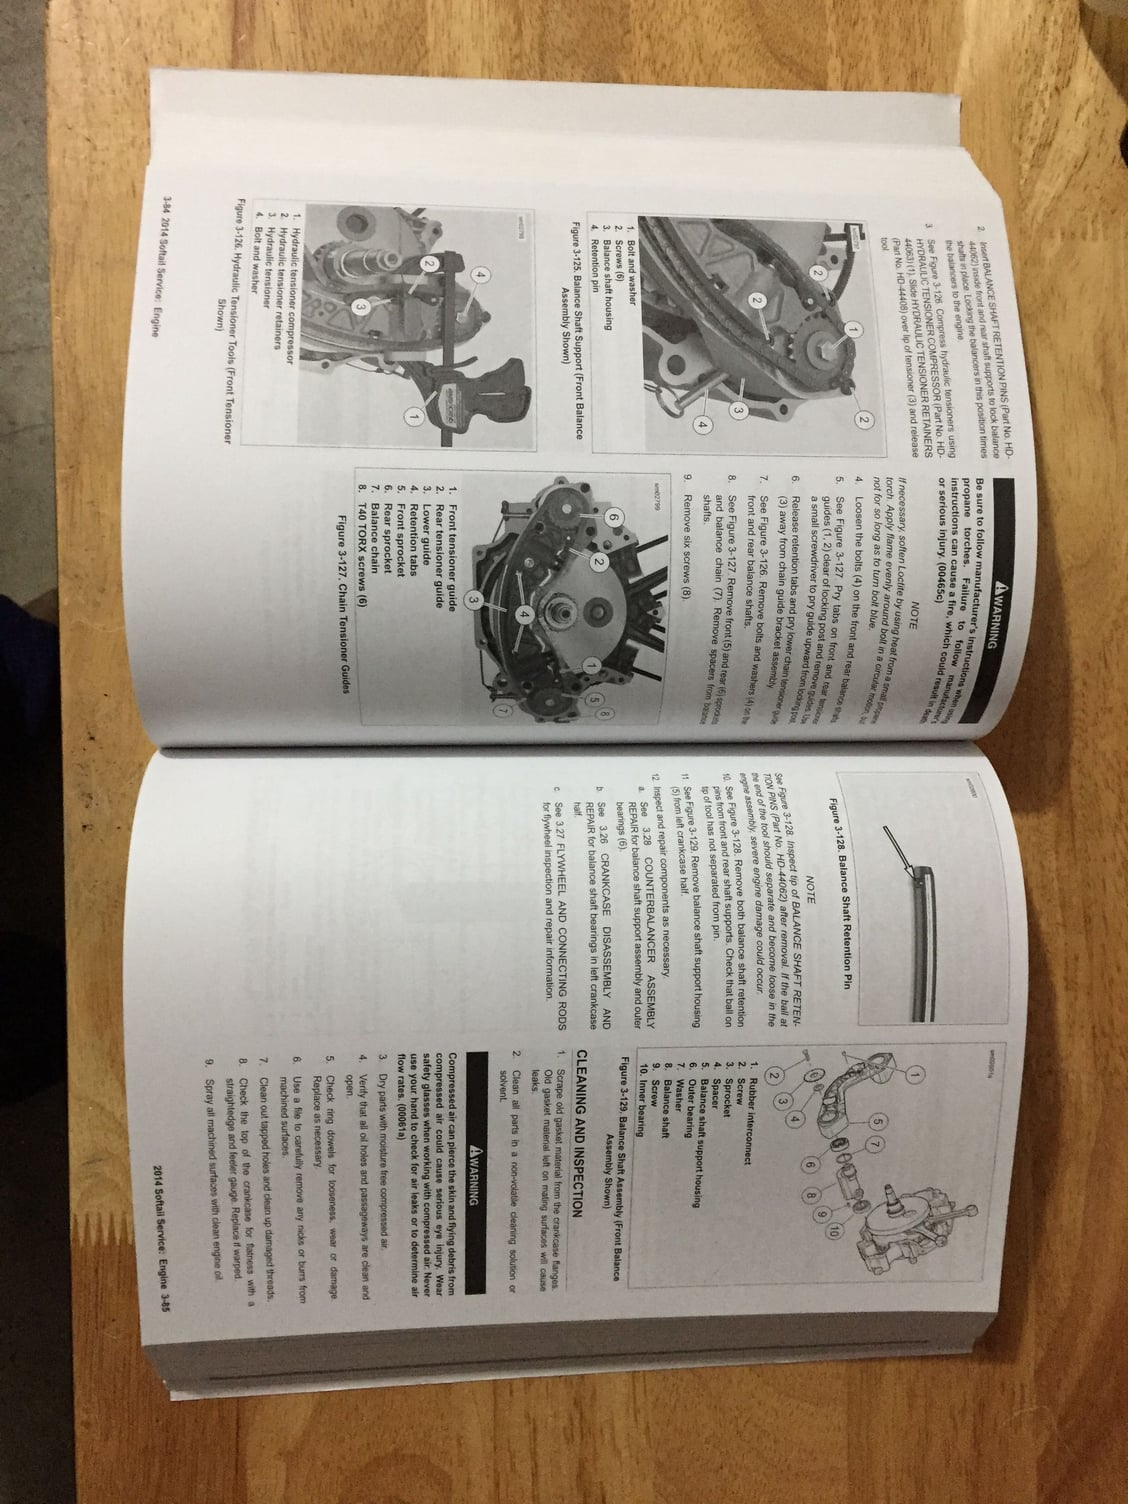 harley davidson truck repair manual pdf free download